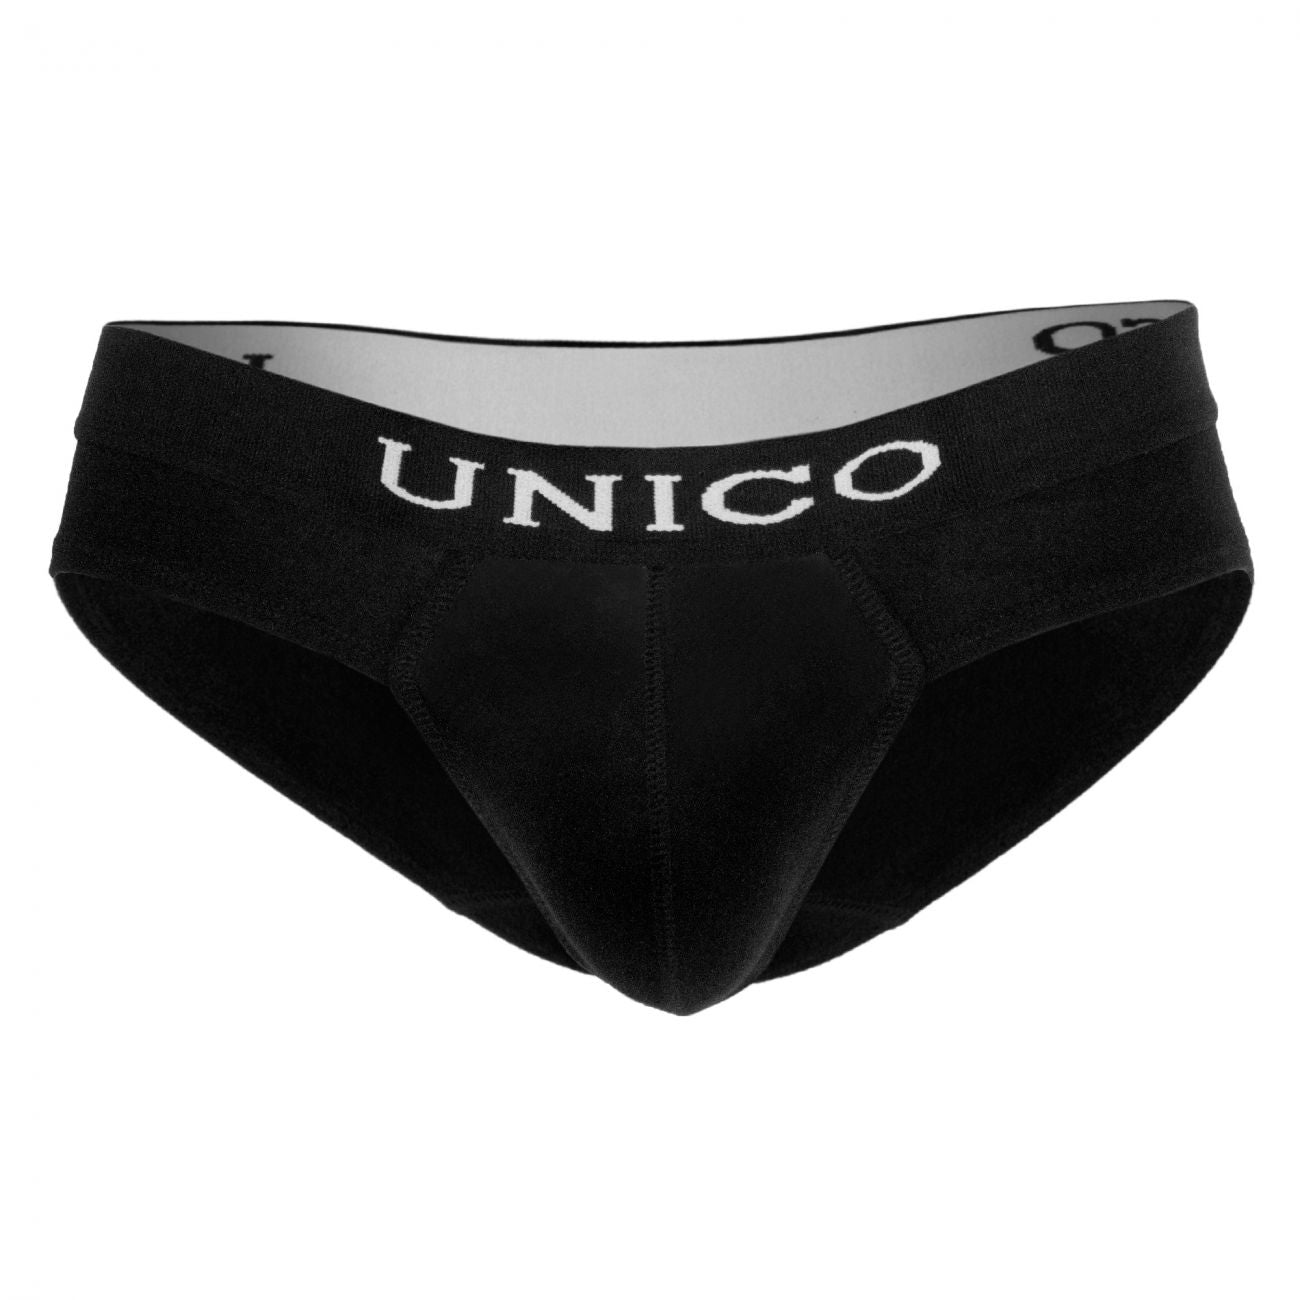 Unico 9610050199 Briefs Intenso Black